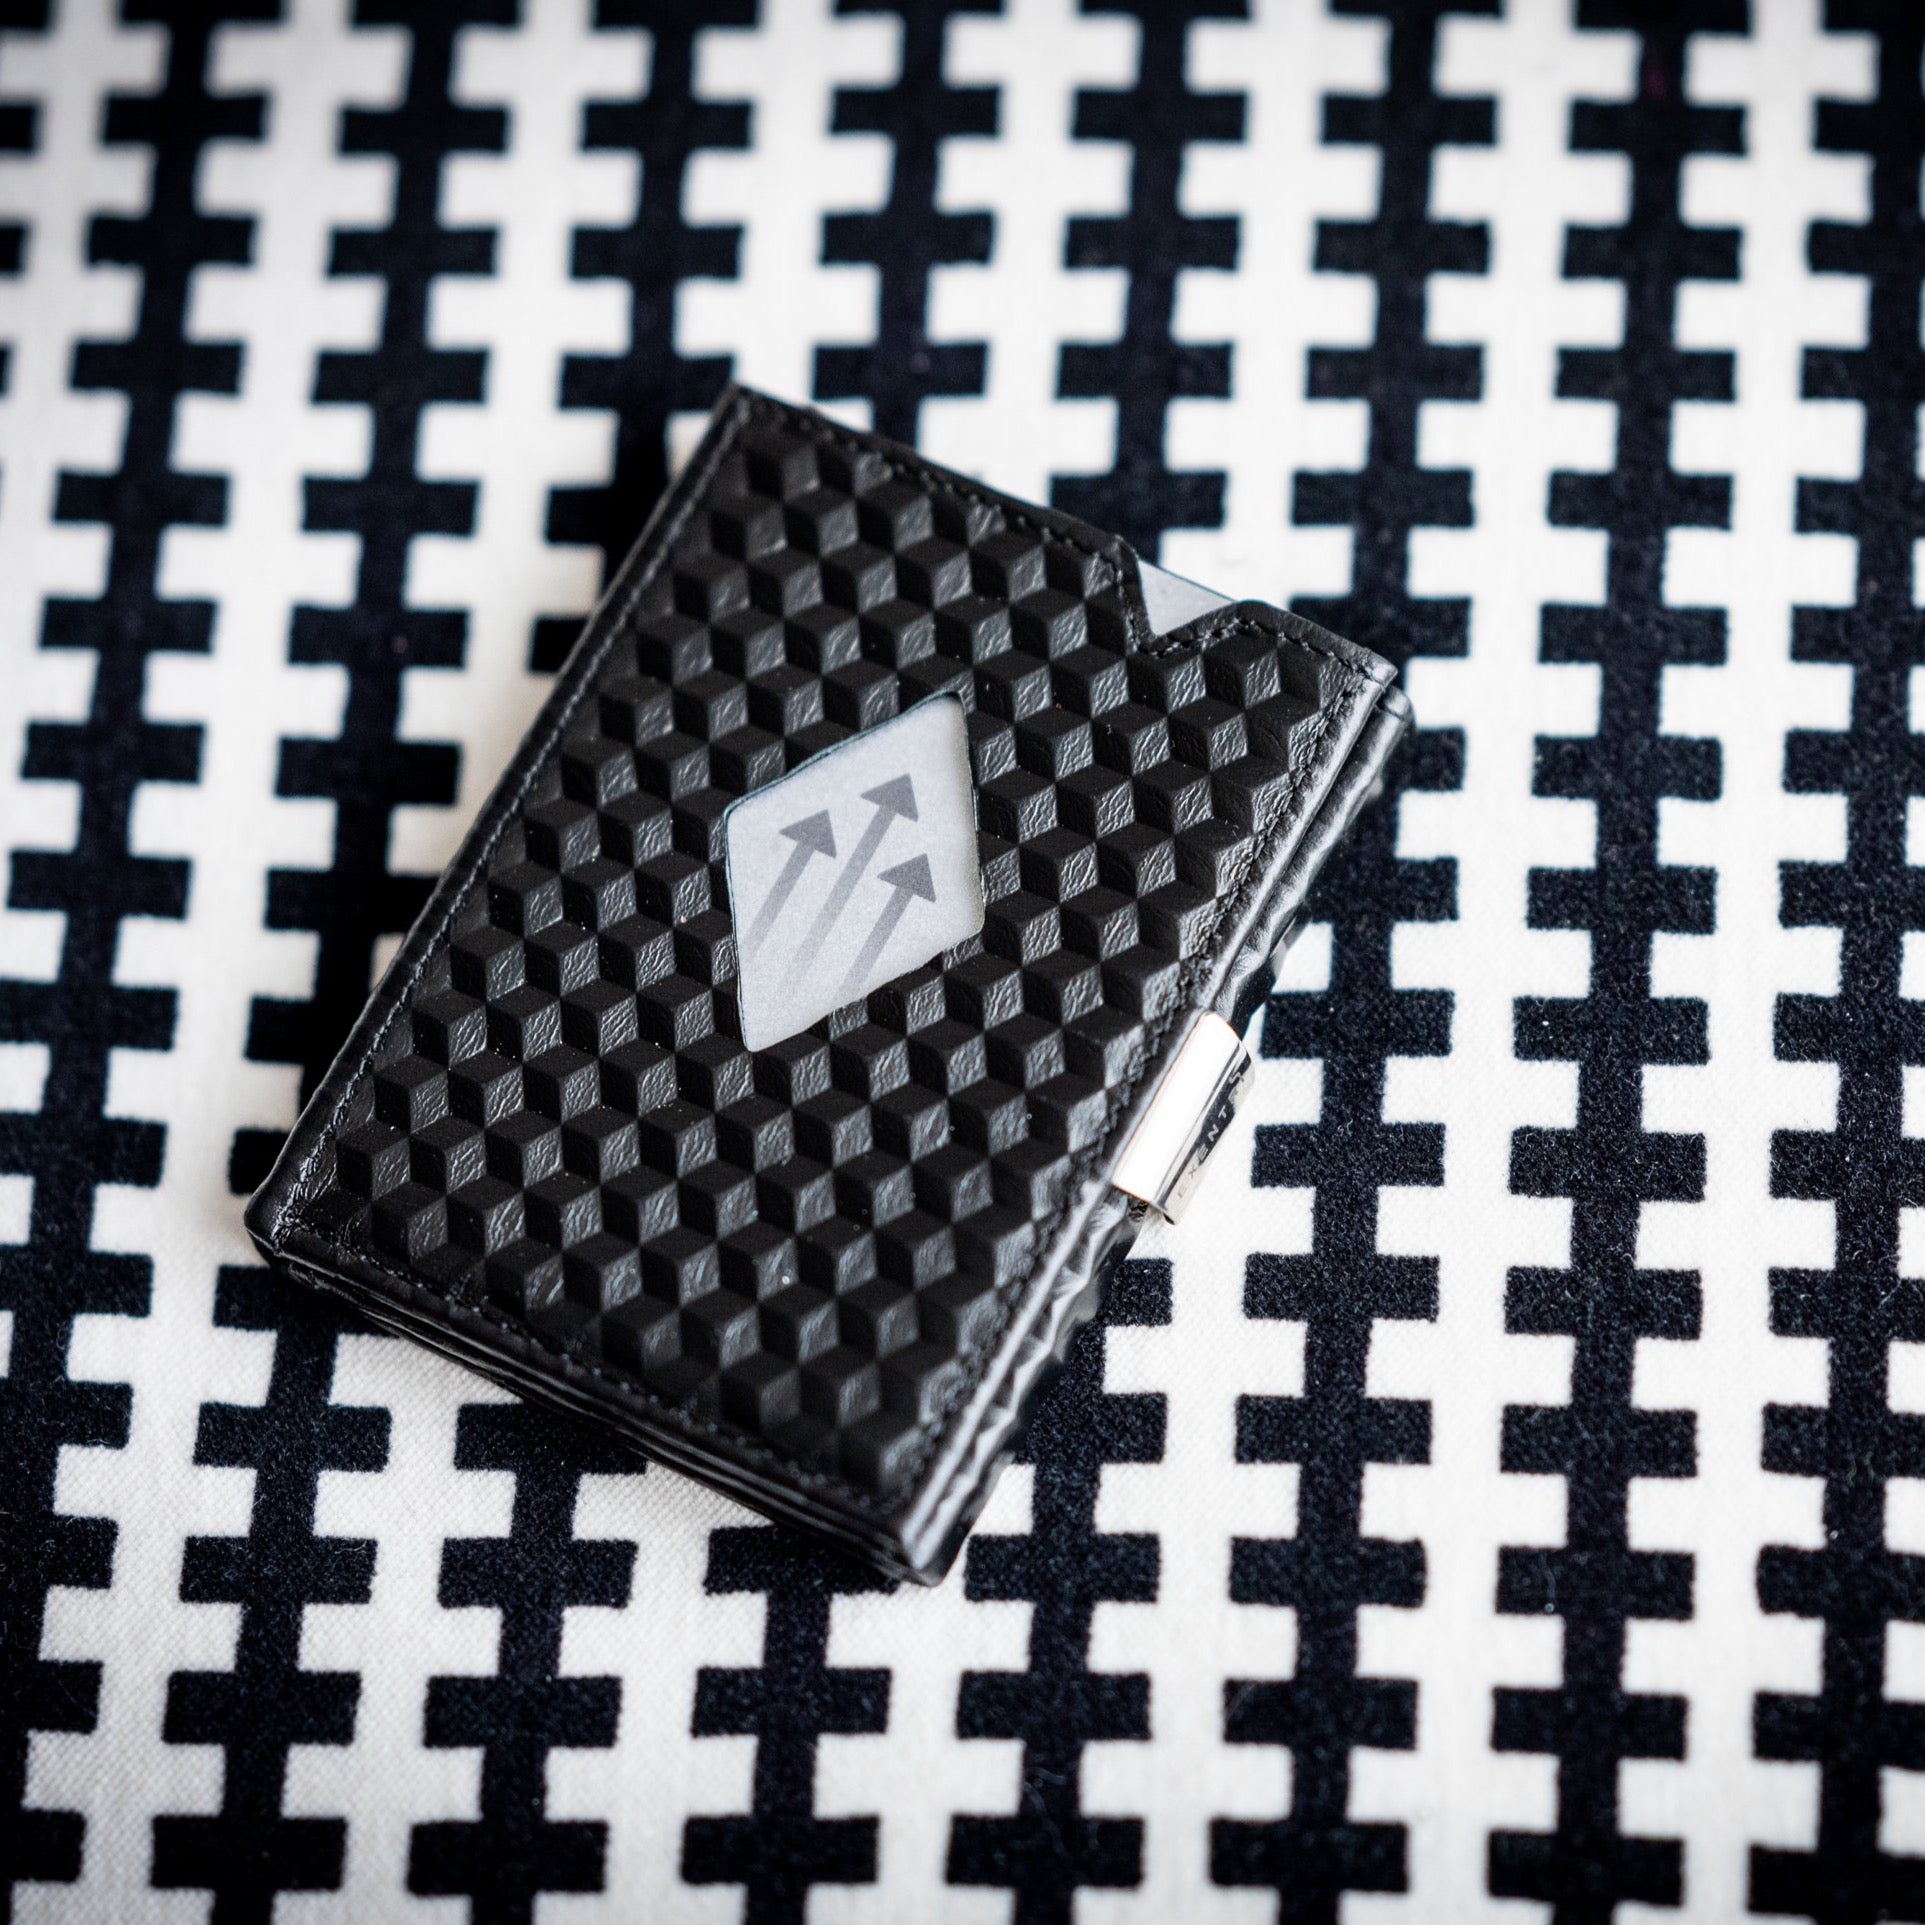 EX D341 - Wallet Black cube